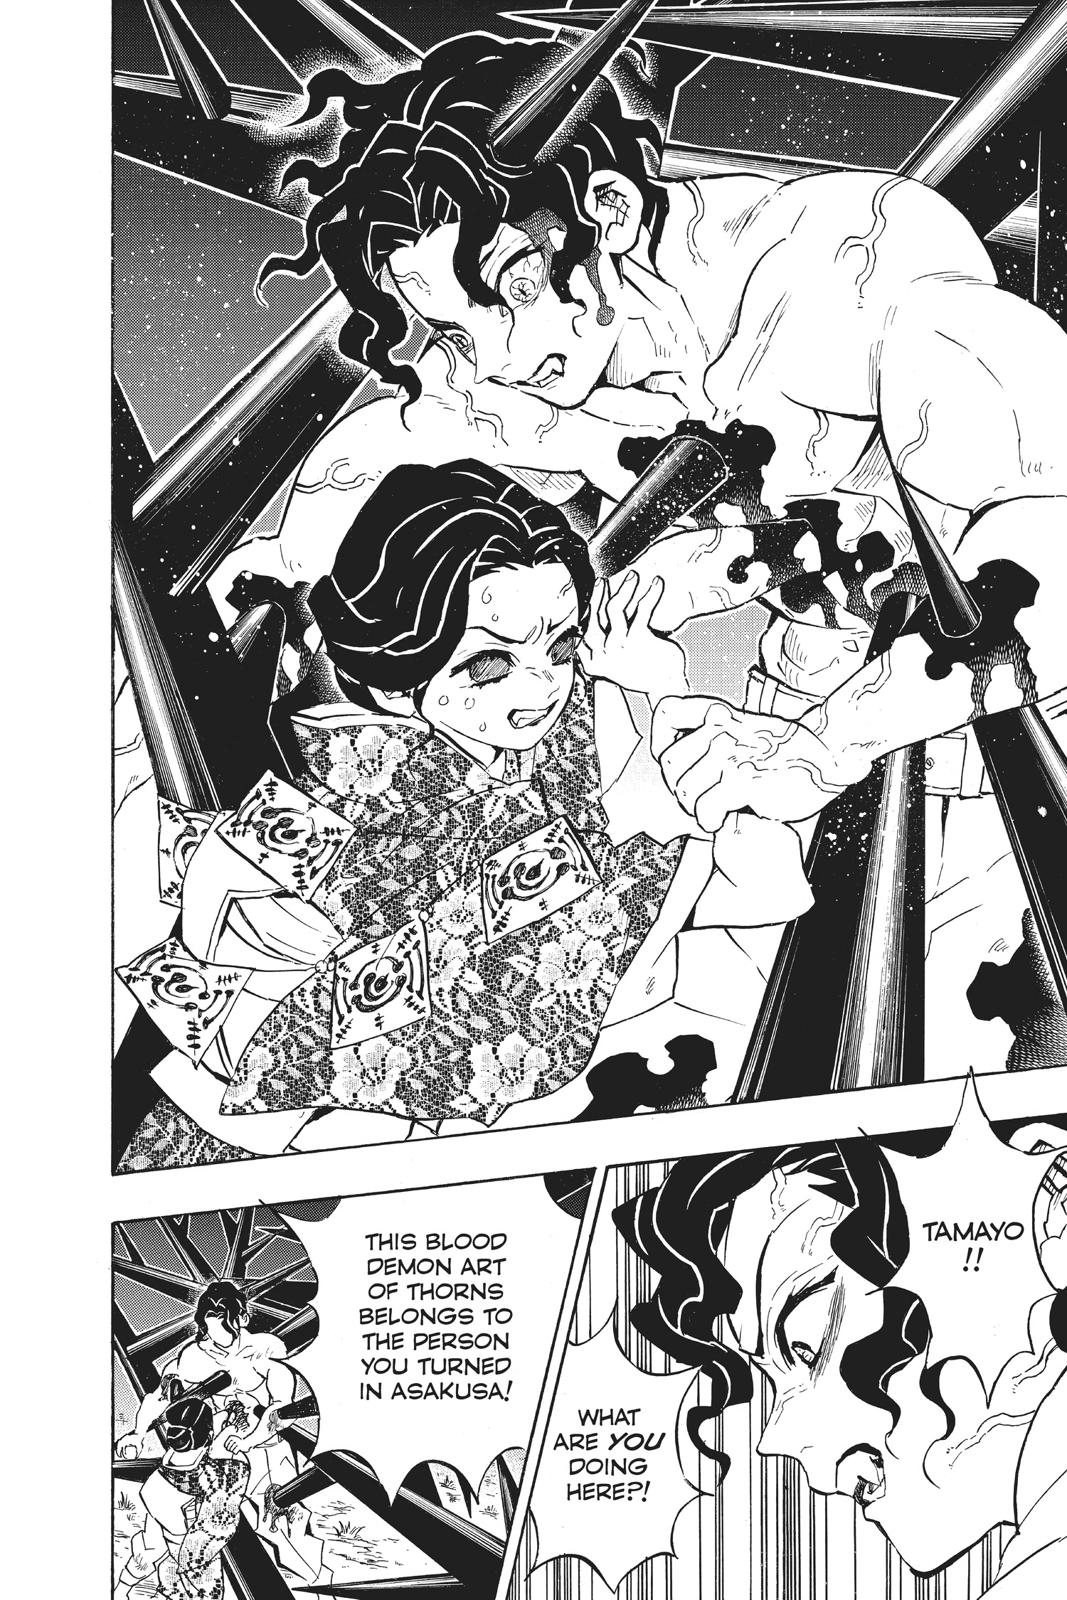 Demon Slayer Manga Manga Chapter - 138 - image 8